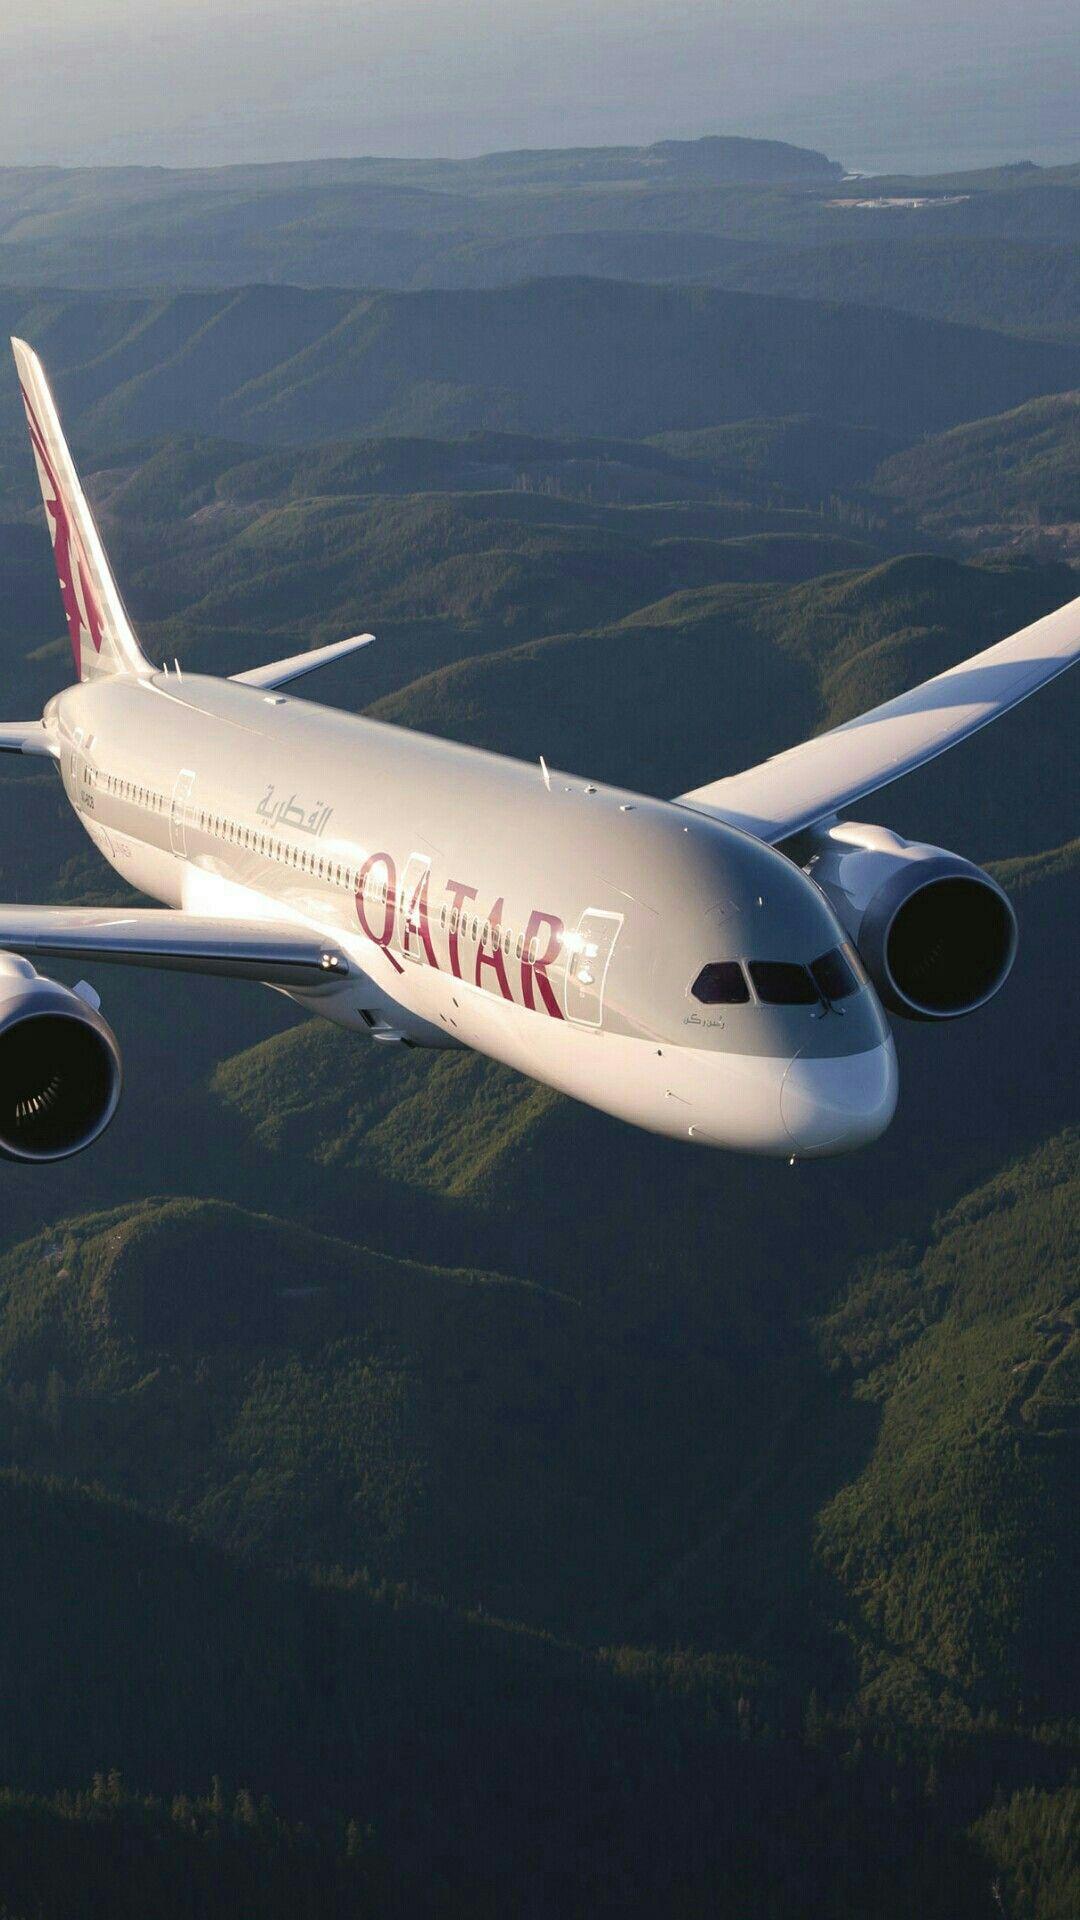 Qatar Airways. My choices. Aviation, Aircraft, Airplane